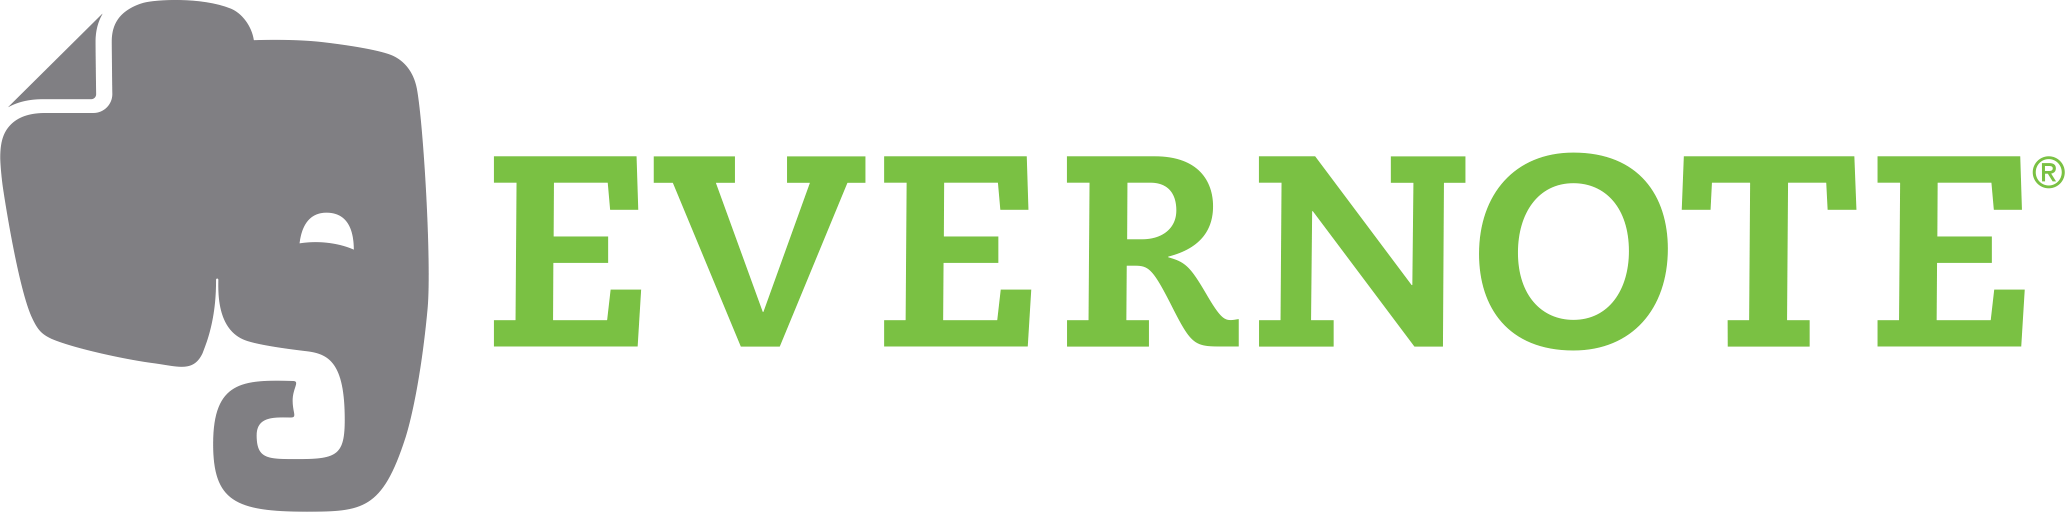 Evernote Logo - Evernote Logo transparent PNG